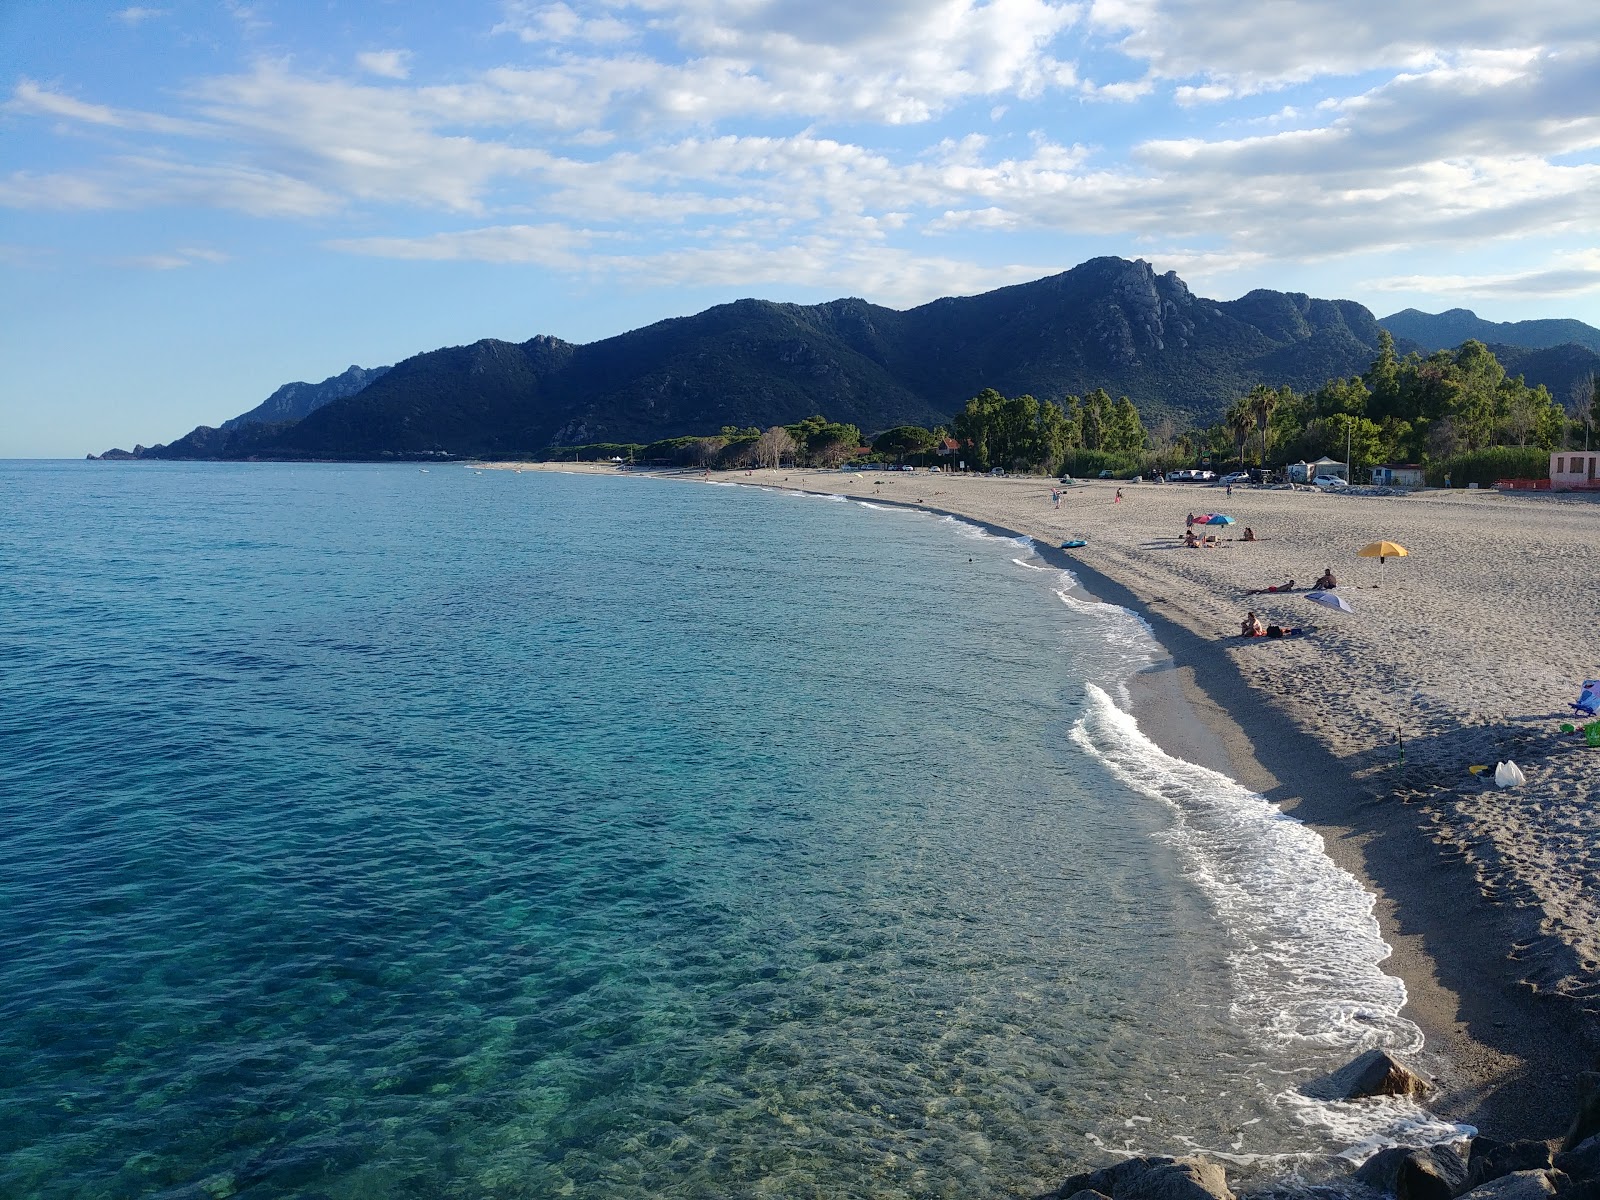 Foto de Spiaggia di Museddu - lugar popular entre los conocedores del relax